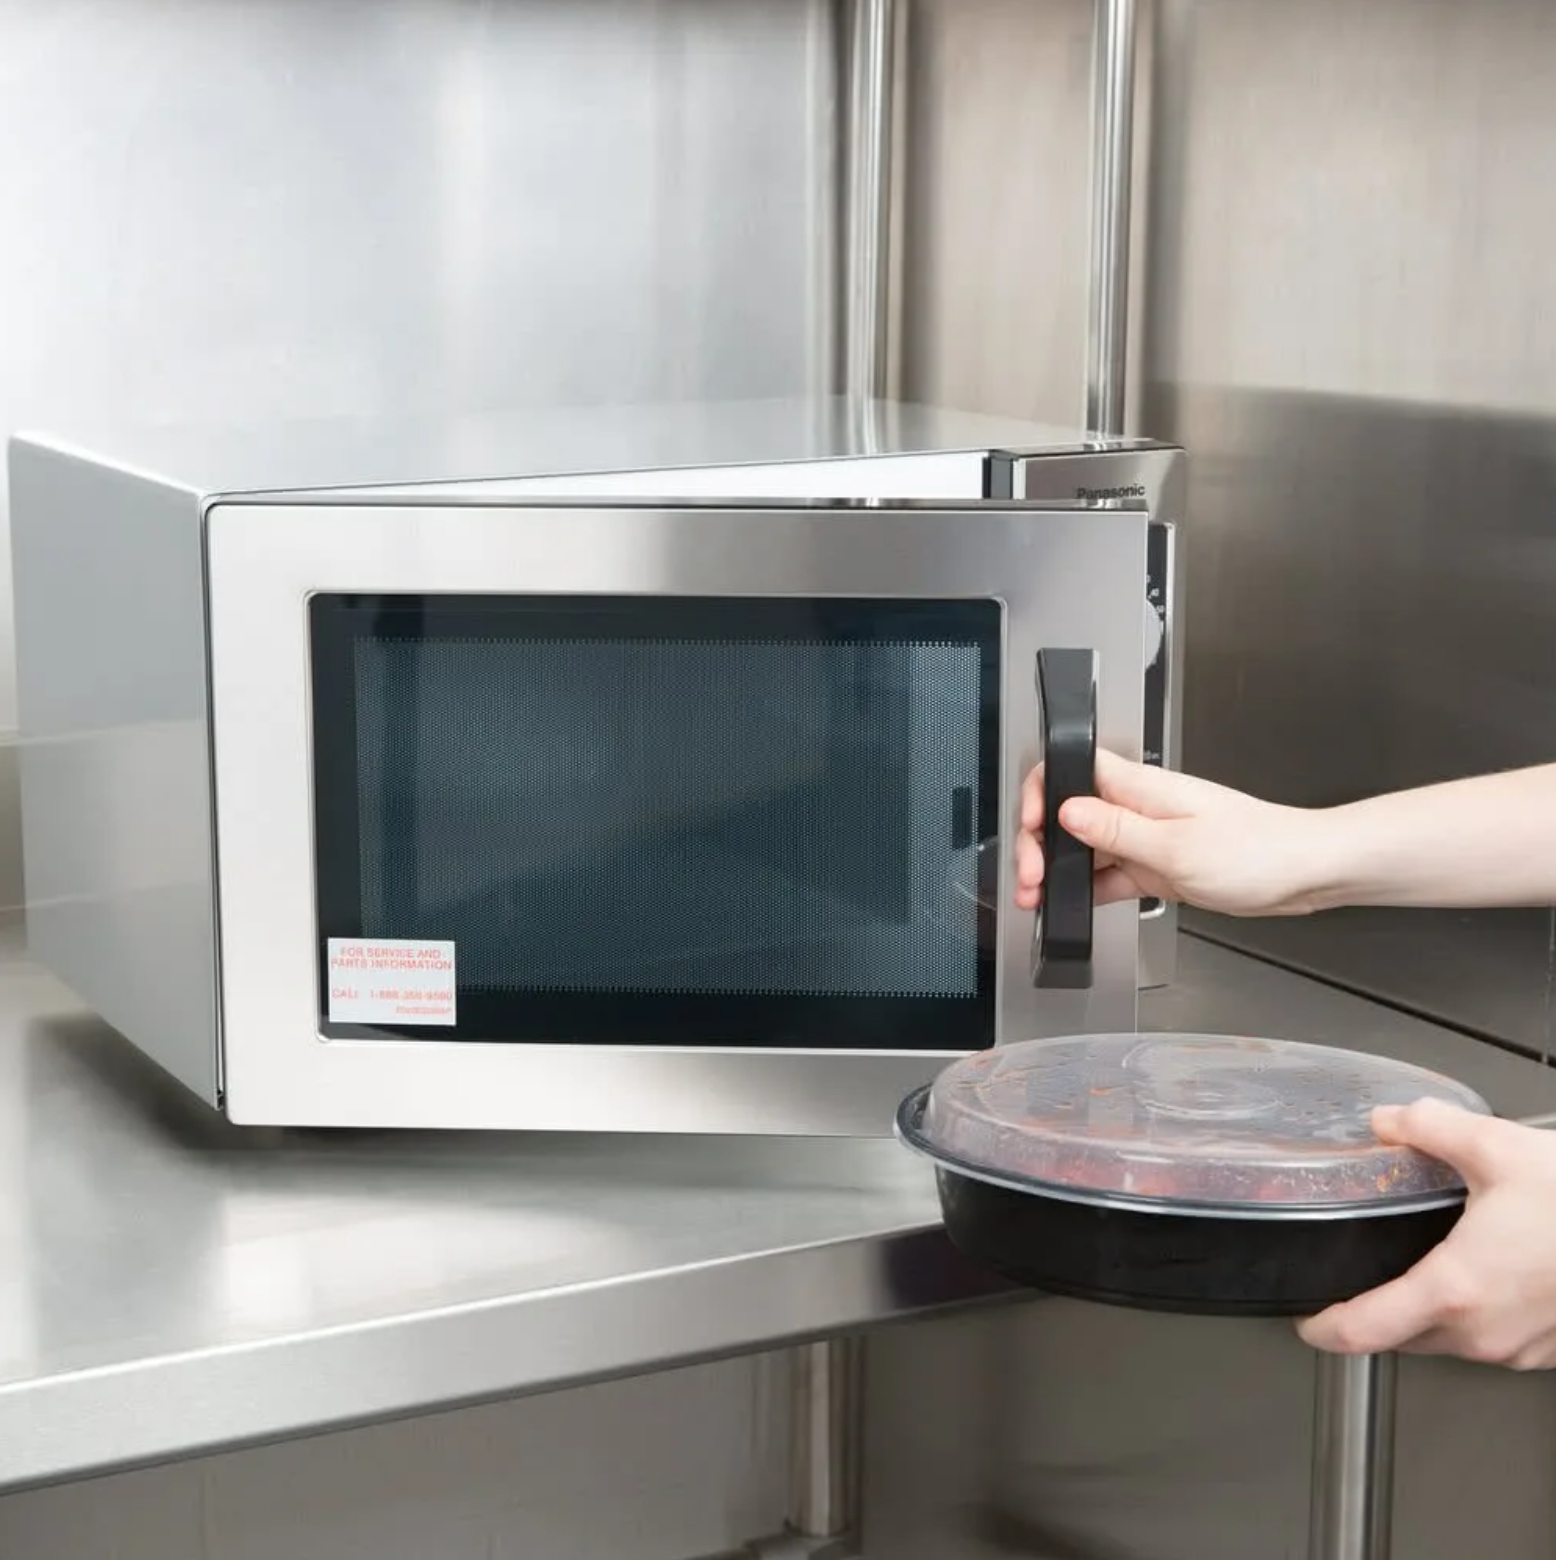 Свч механическая. Panasonic Microwave Oven 1000w. Микроволновая печь Demag Pro 100. Микроволновая печь HYM-m20443. Microwave Oven 25m1.